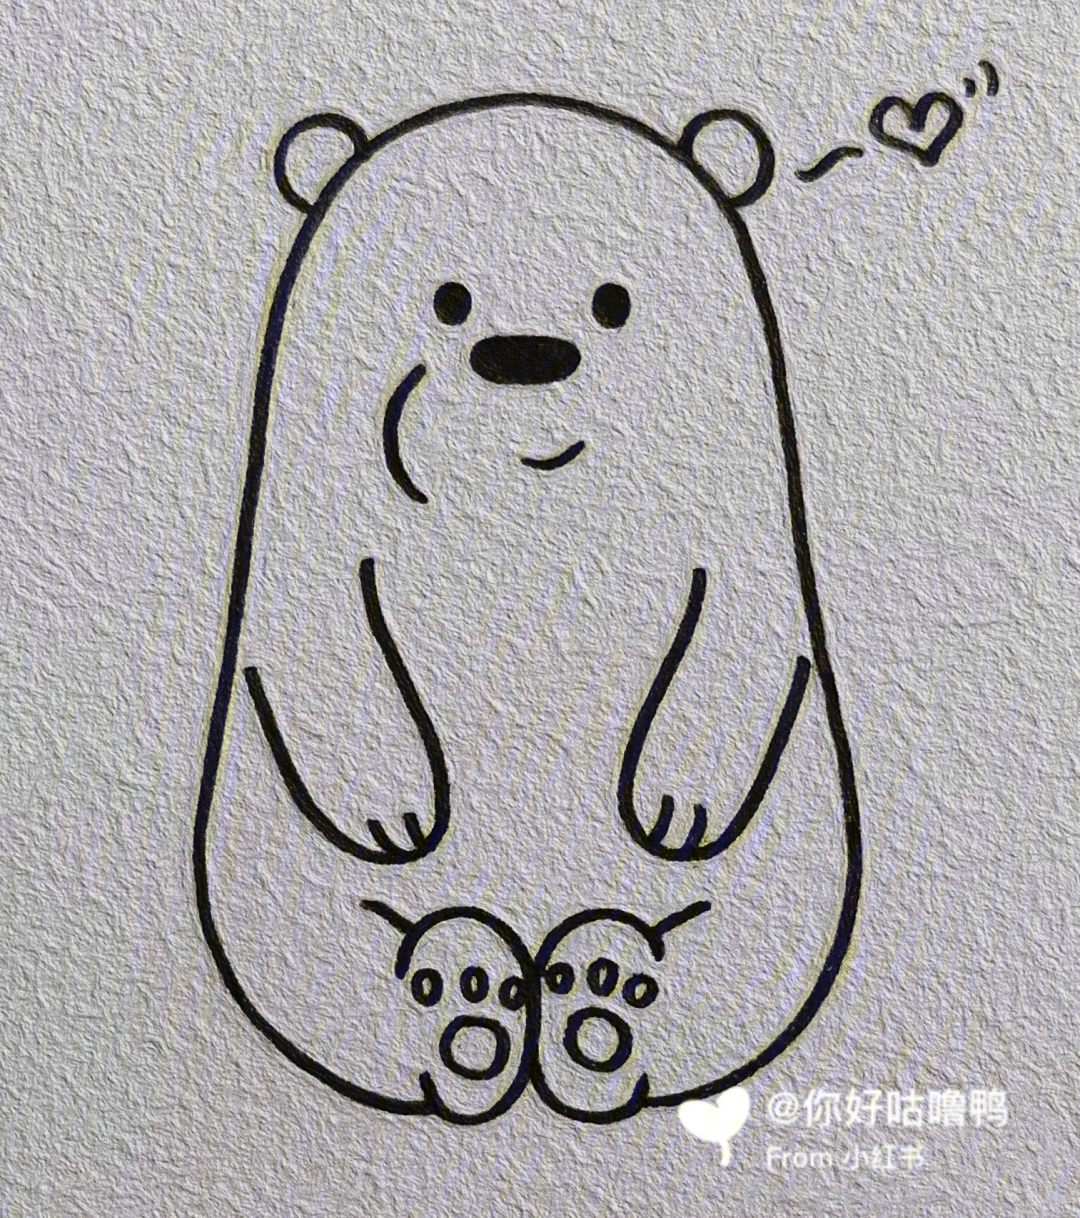 白熊简笔画画法图片